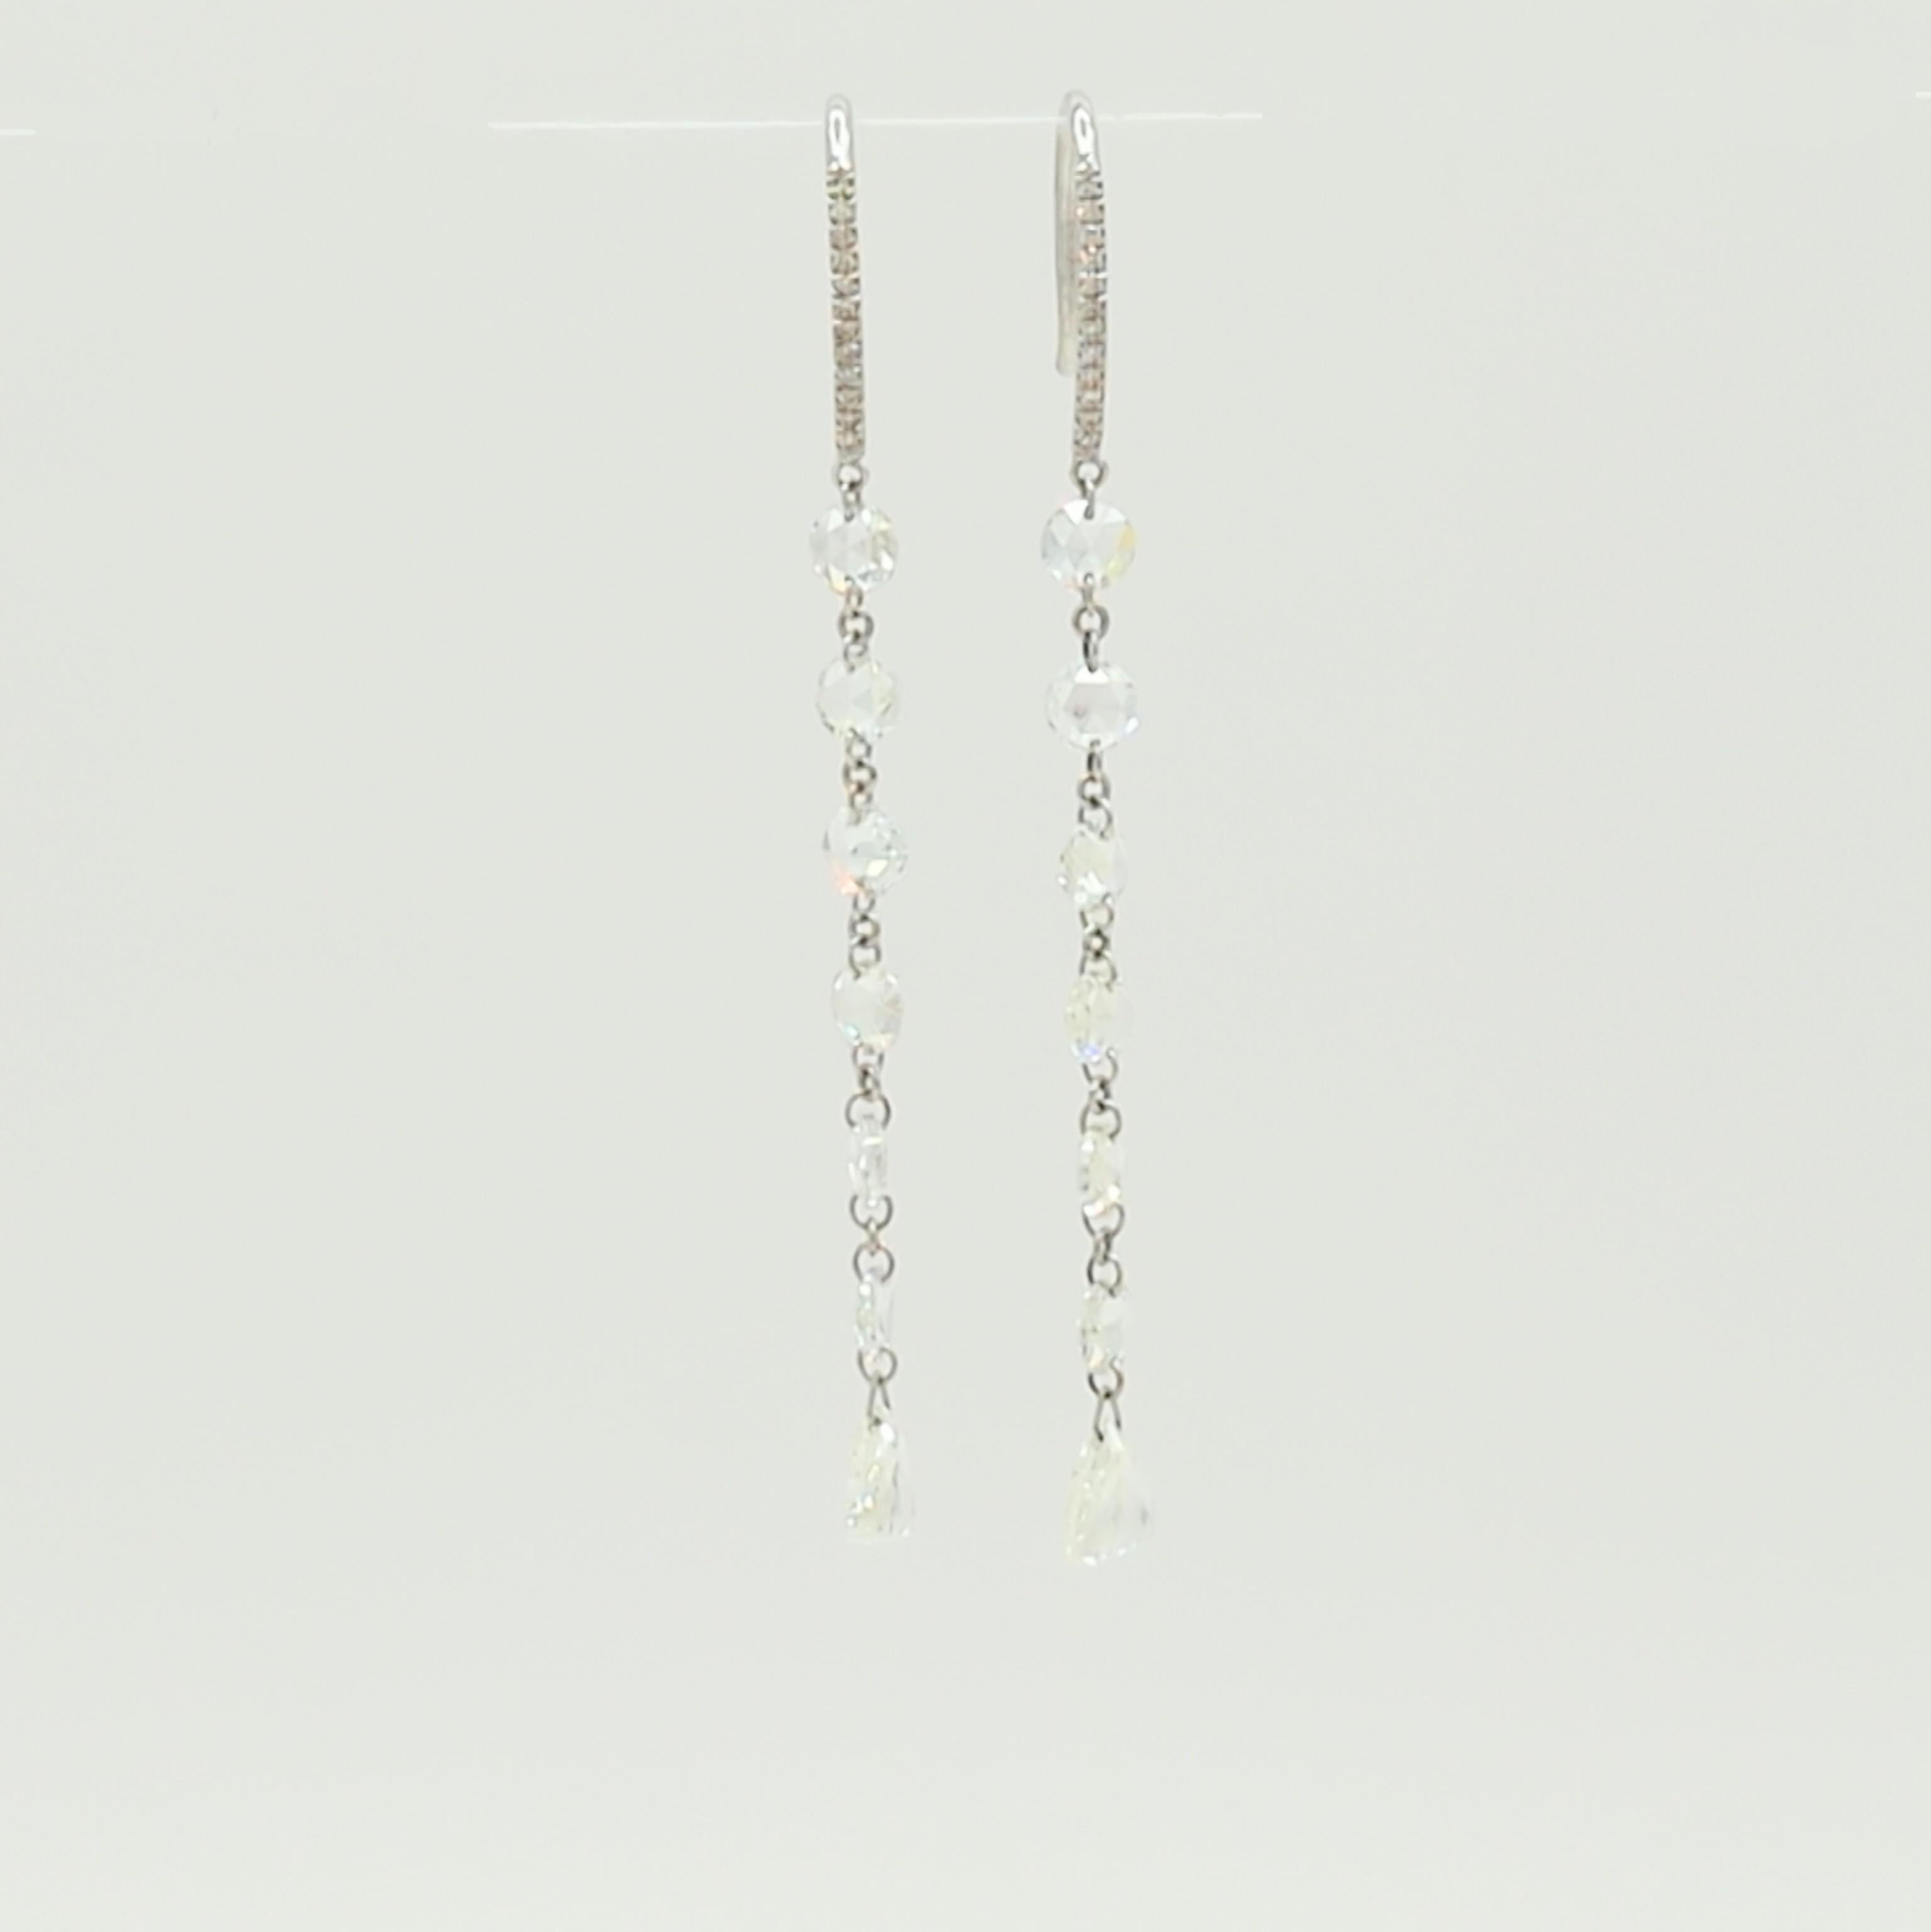 Multi-Shape Rose Cut White Diamond Dangle Earrings in 18K White Gold For Sale 1